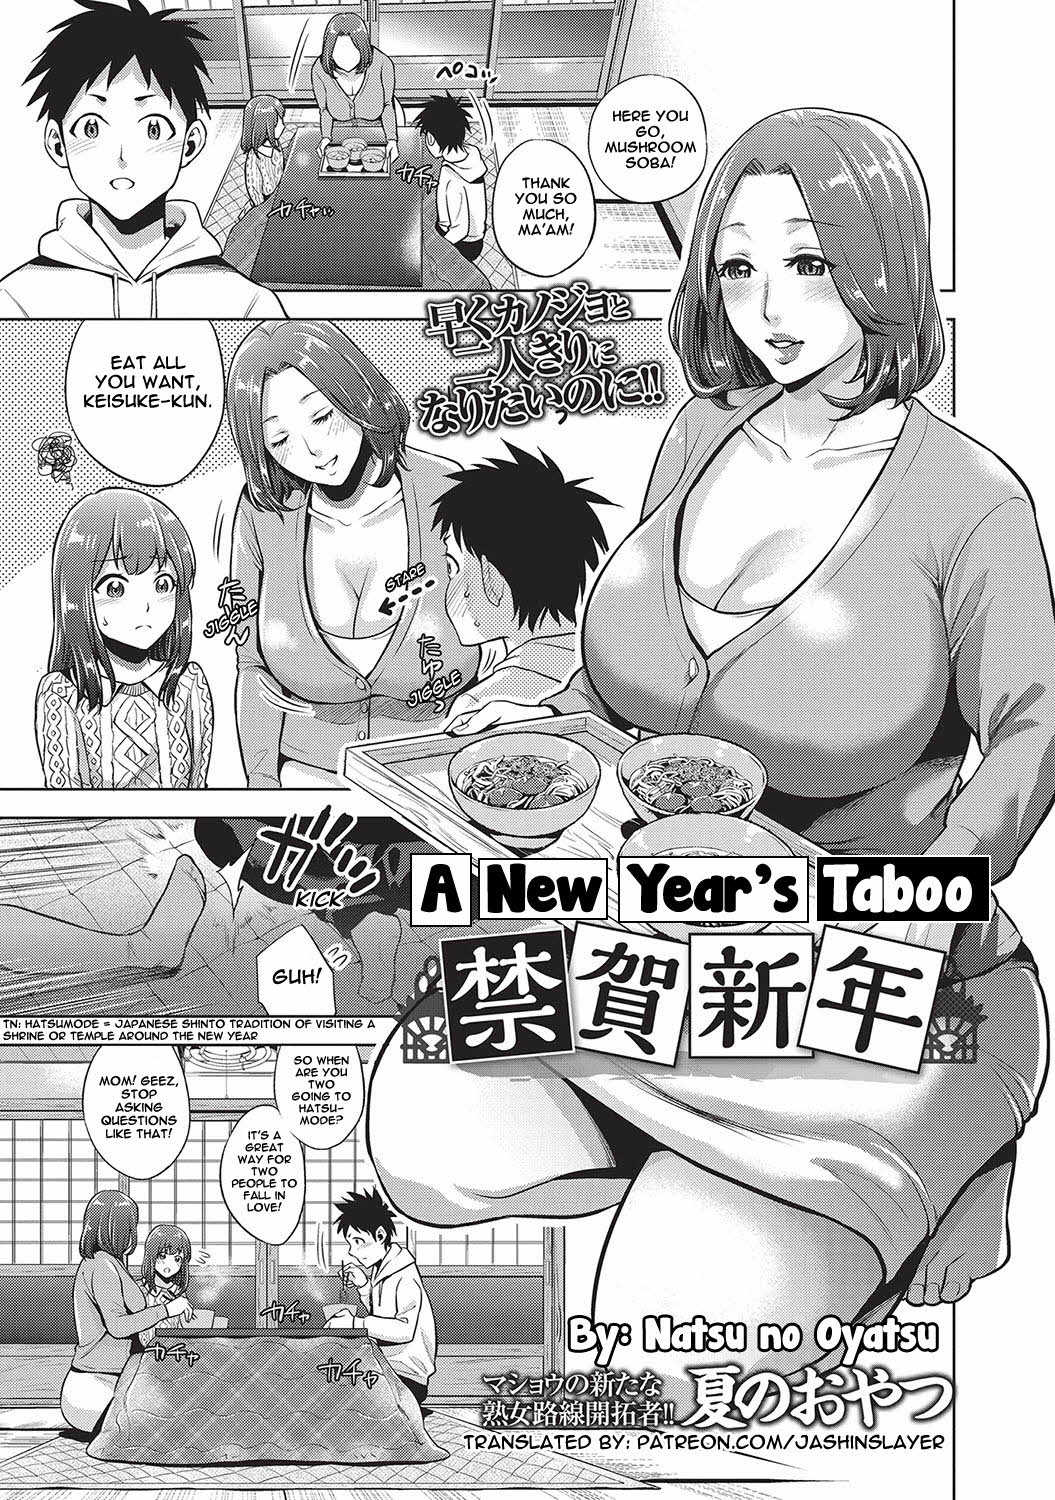 [Natsu no Oyatsu] A New Year's Taboo Hentai Comics